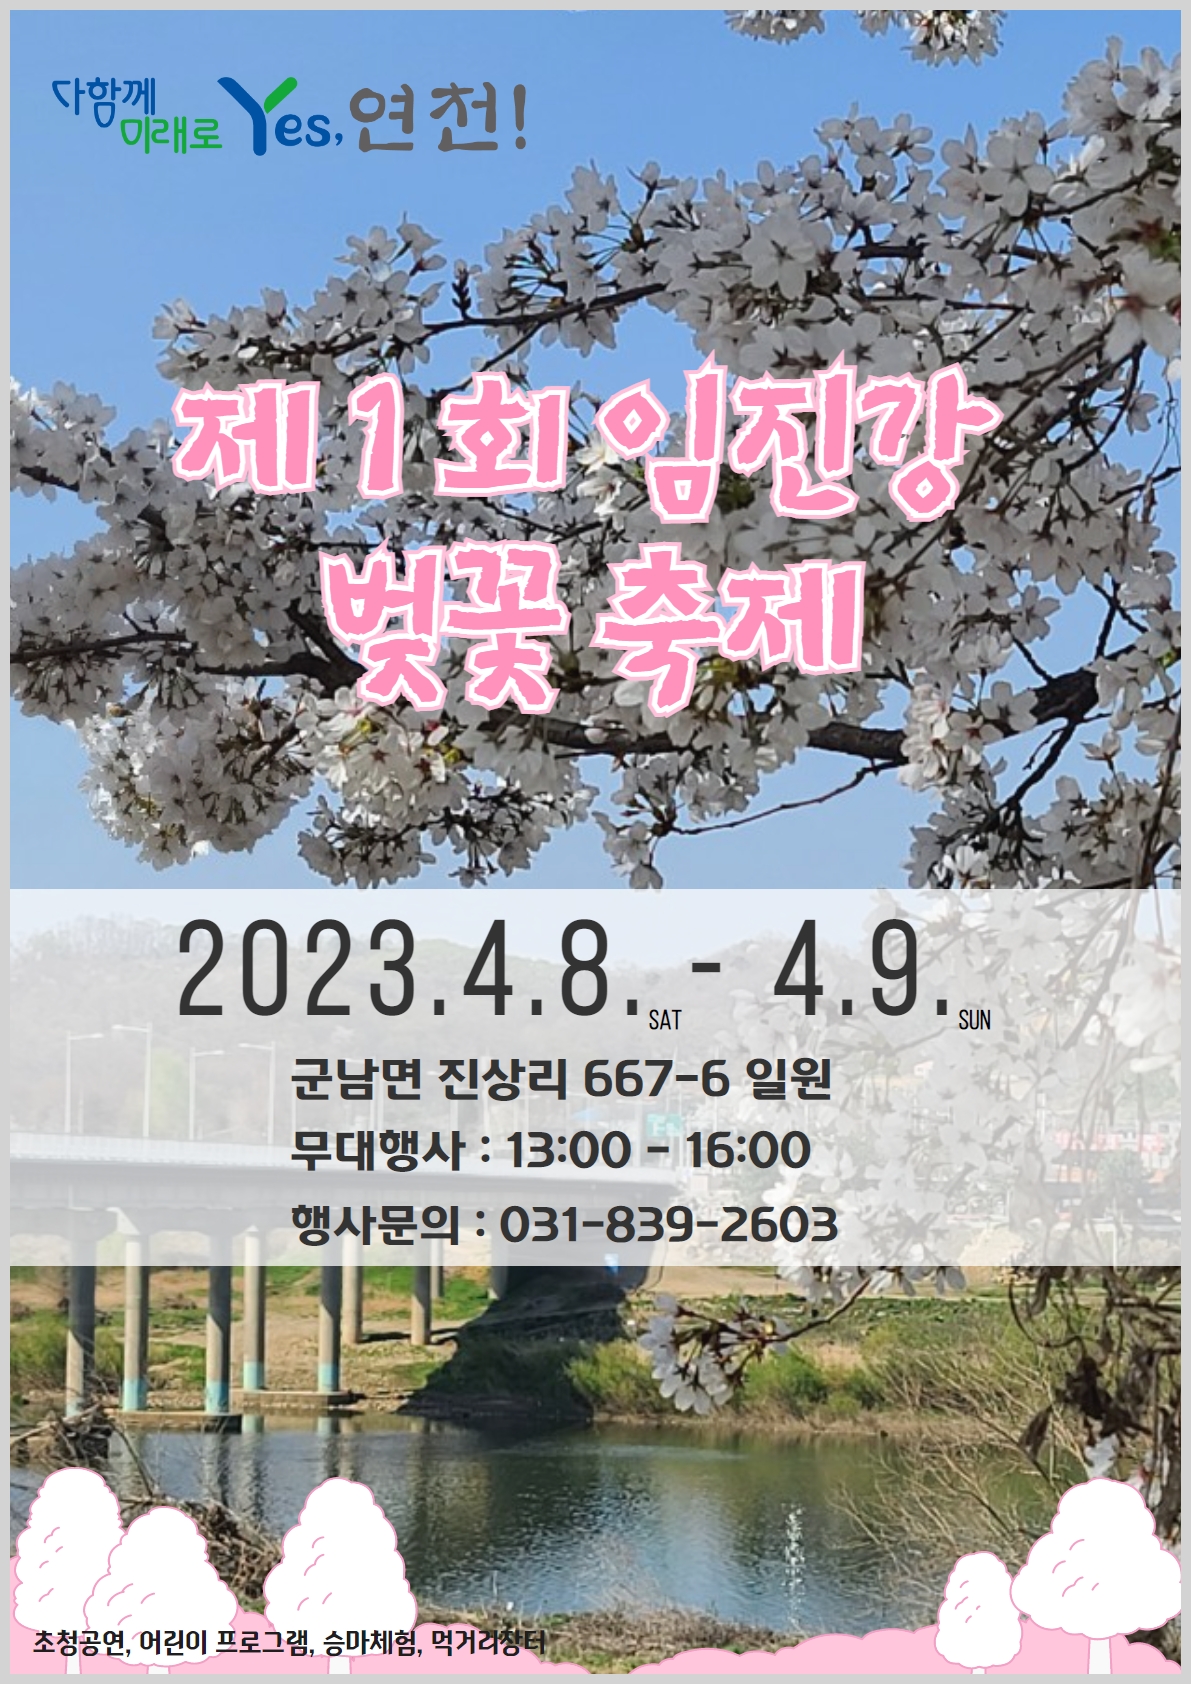 제1회 임진강 벚꽃축제 이미지 1 - 본문에 자세한설명을 제공합니다.